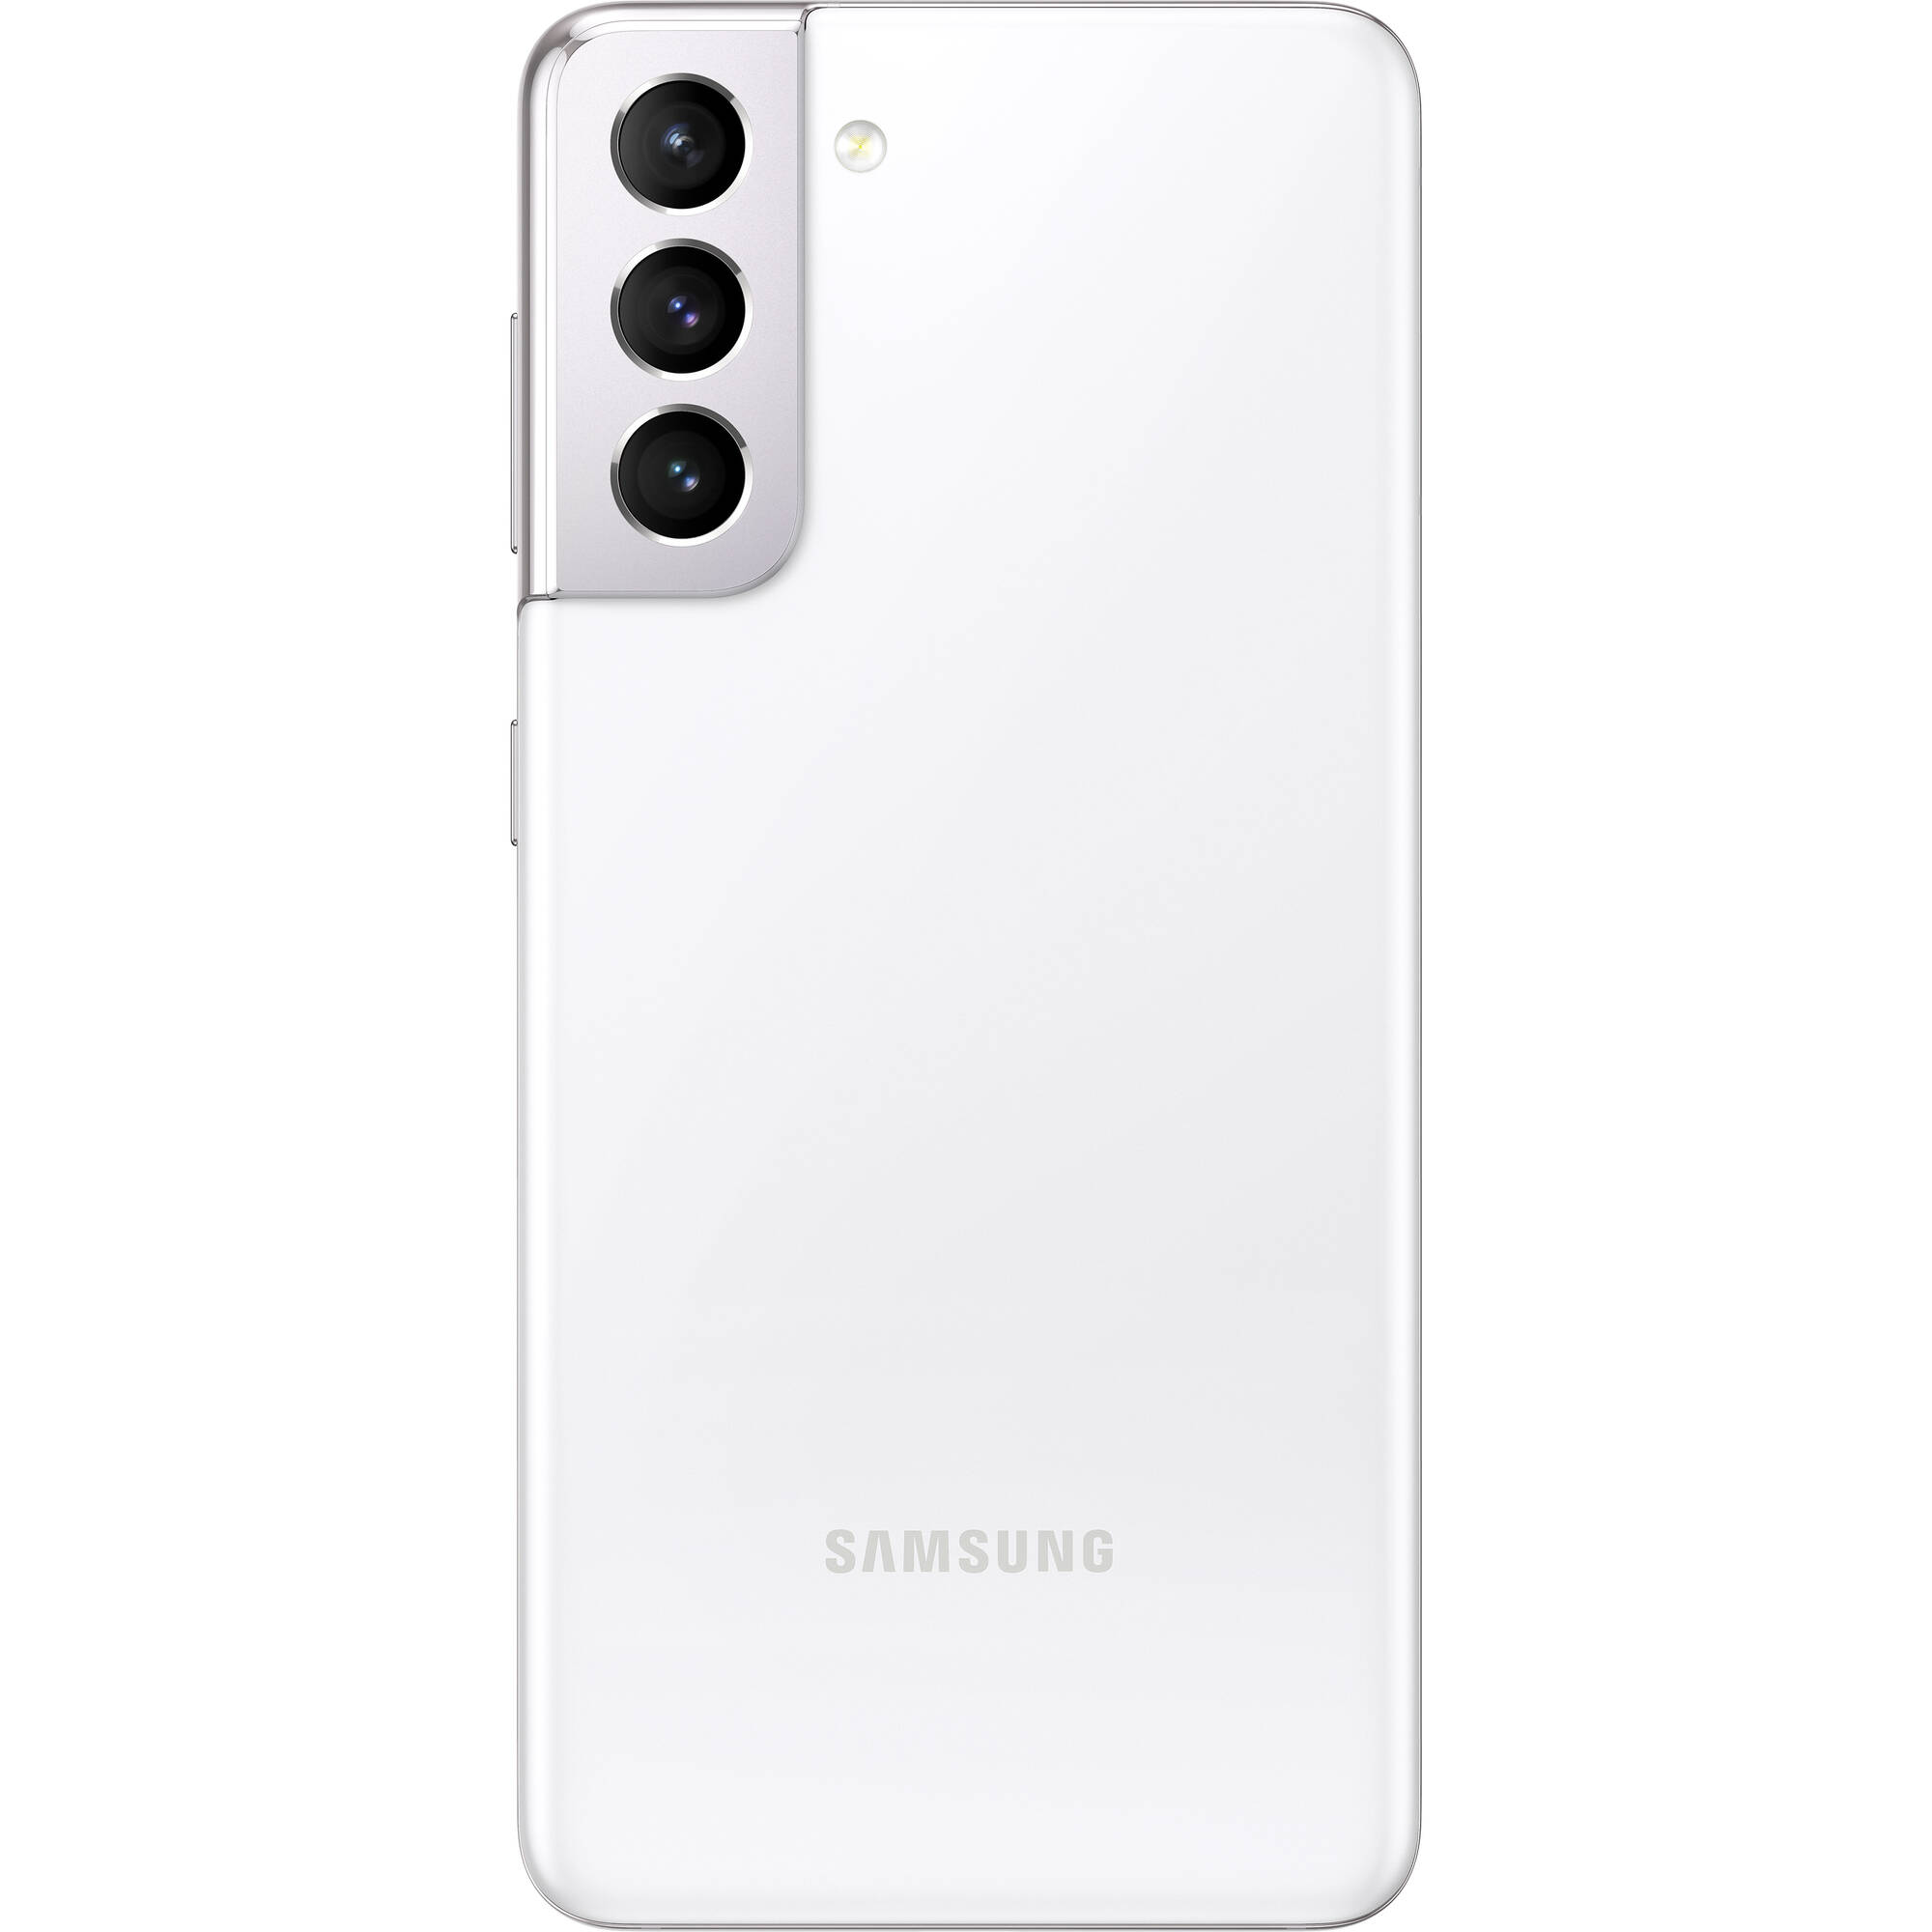 Samsung Galaxy S21 Dual Sim 128gb 5g Smartphone Unlocked Phantom White